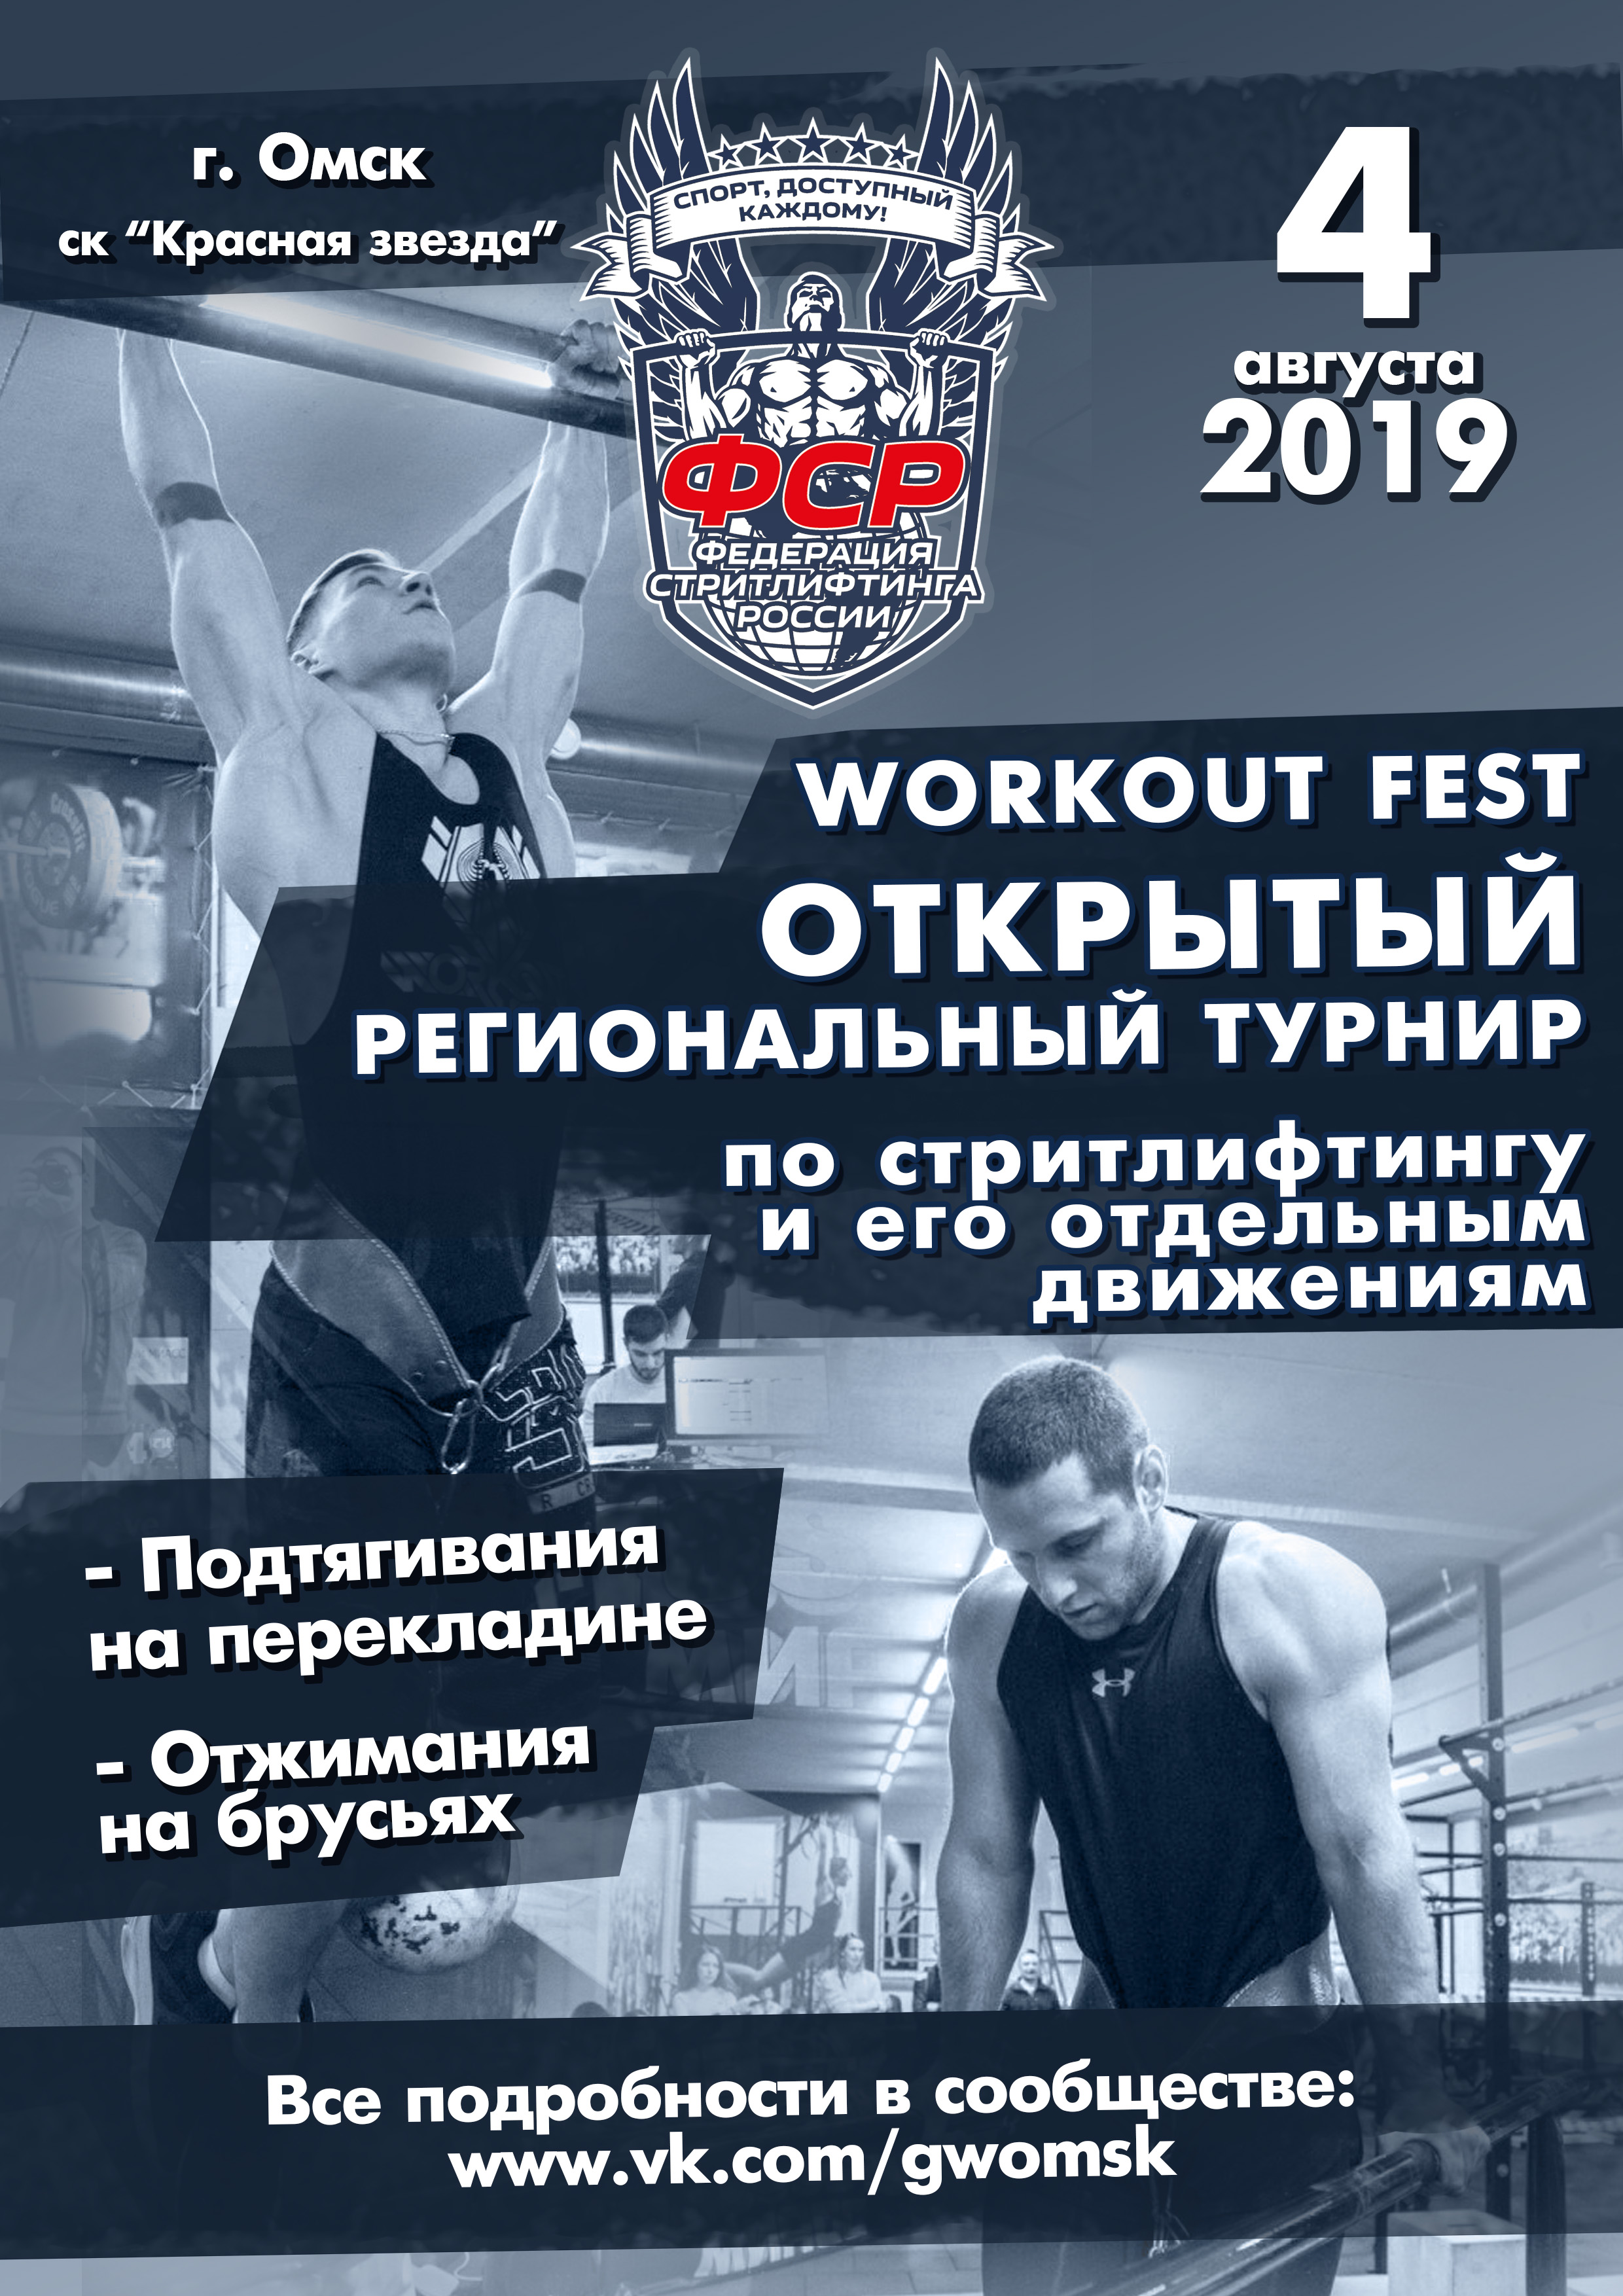 04 августа 2019 – Открытый региональный турнир «Workout Fest» по стритлифтингу и его отдельным движениям, г. Омск (К, М)